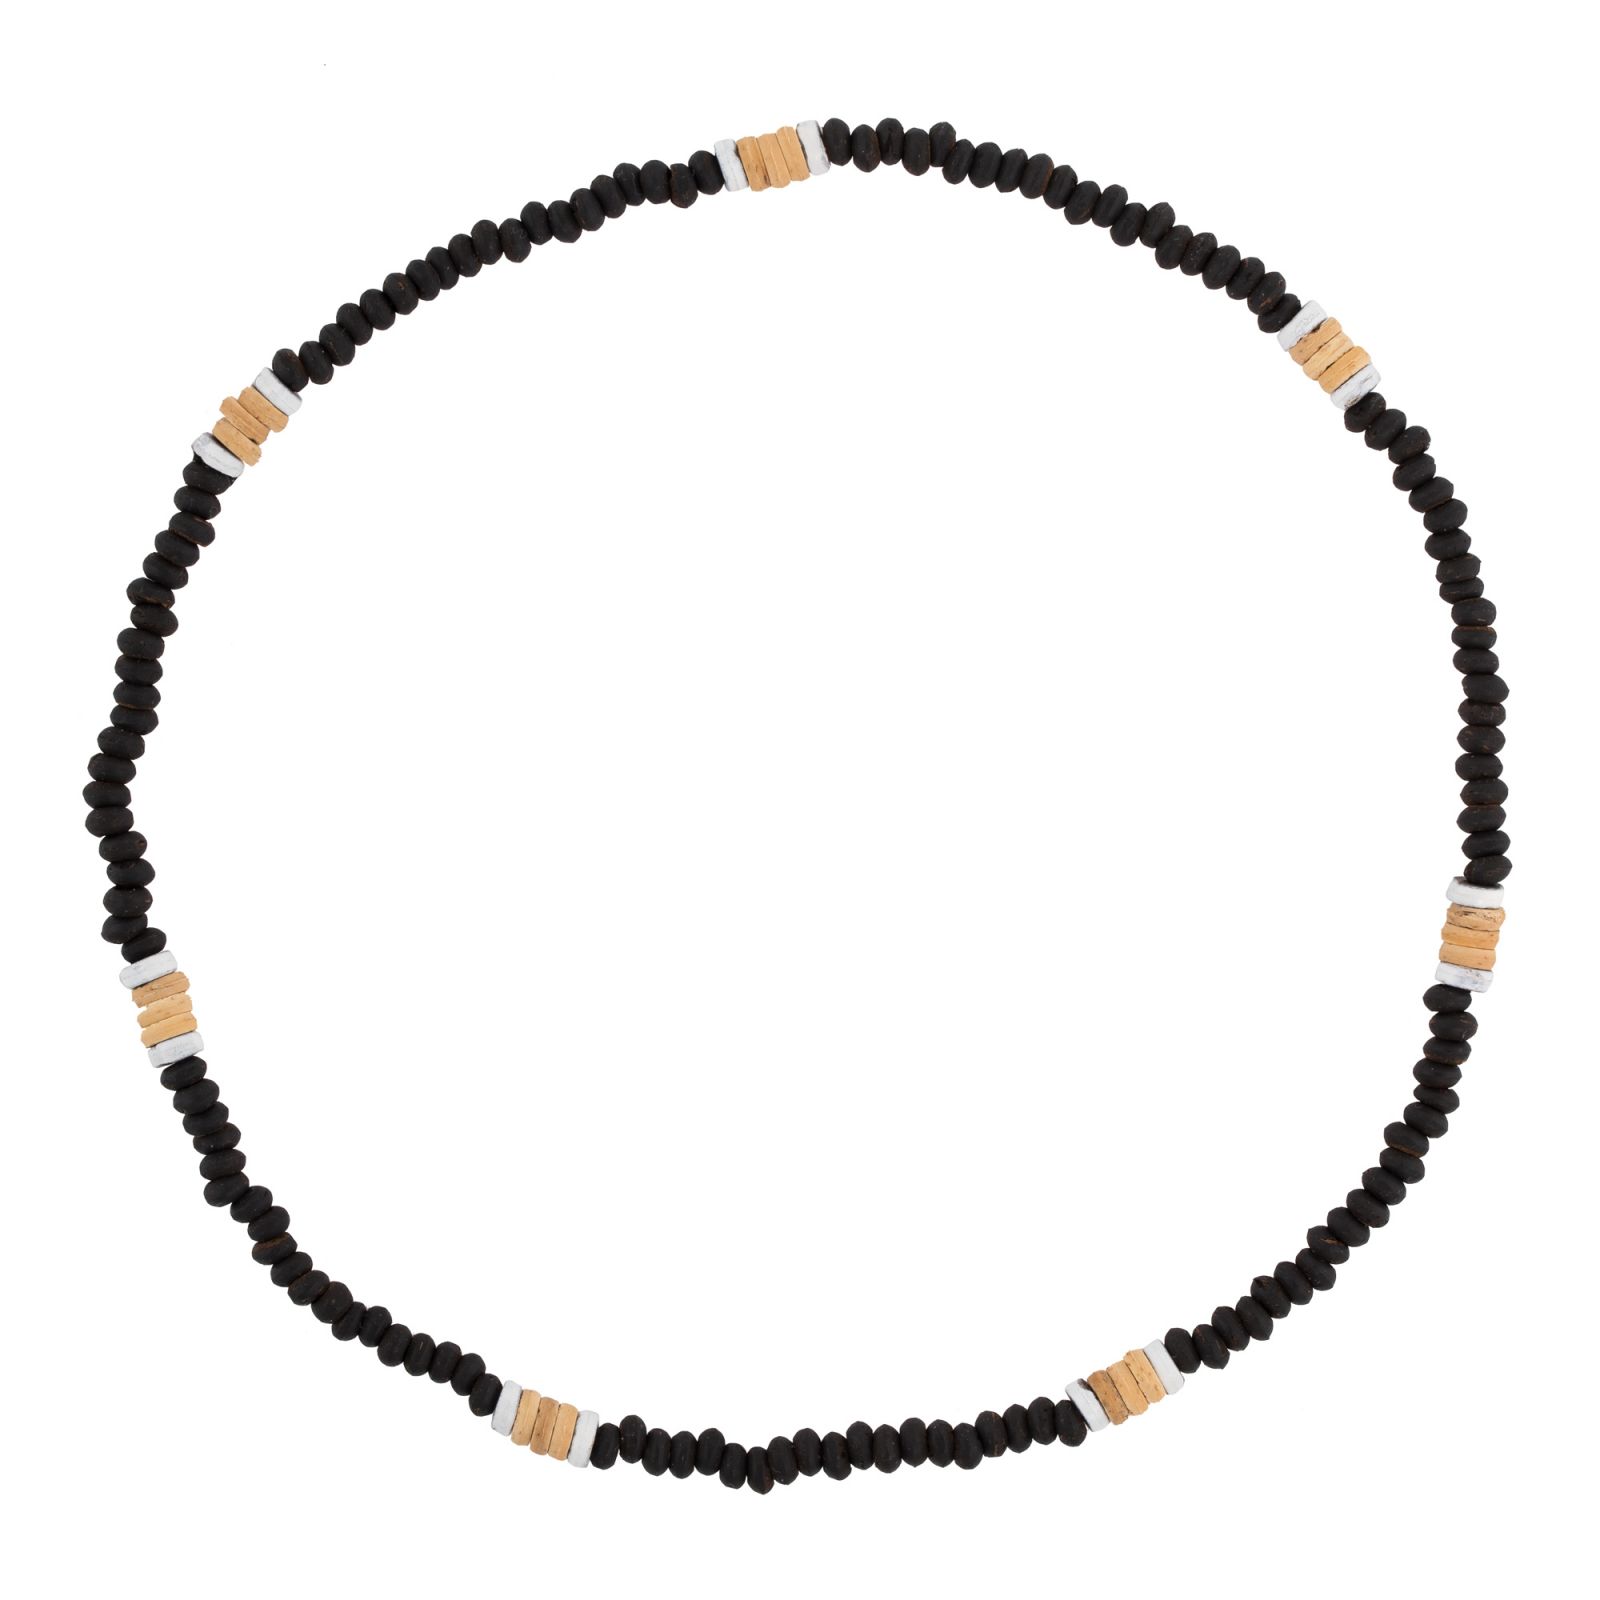 Bead necklace Batu Bara Thailand